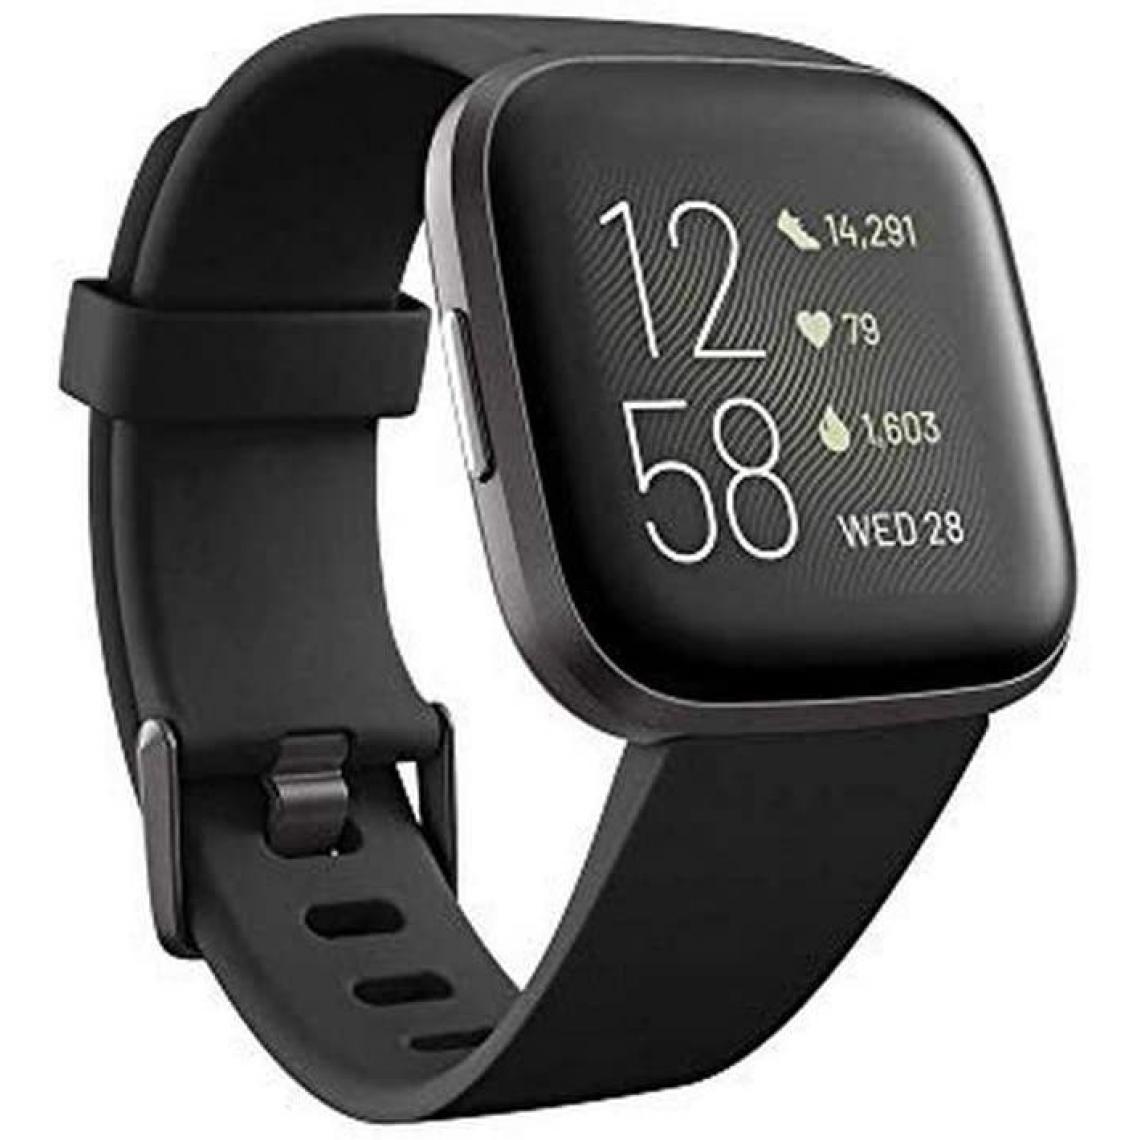 Chrono - Montre connectée Fitbit Versa 2 Santé et Fitness avec fréquence cardiaque, musique, Alexa intégré, suivi du sommeil et de la natationï¼noirï¼ - Montre connectée